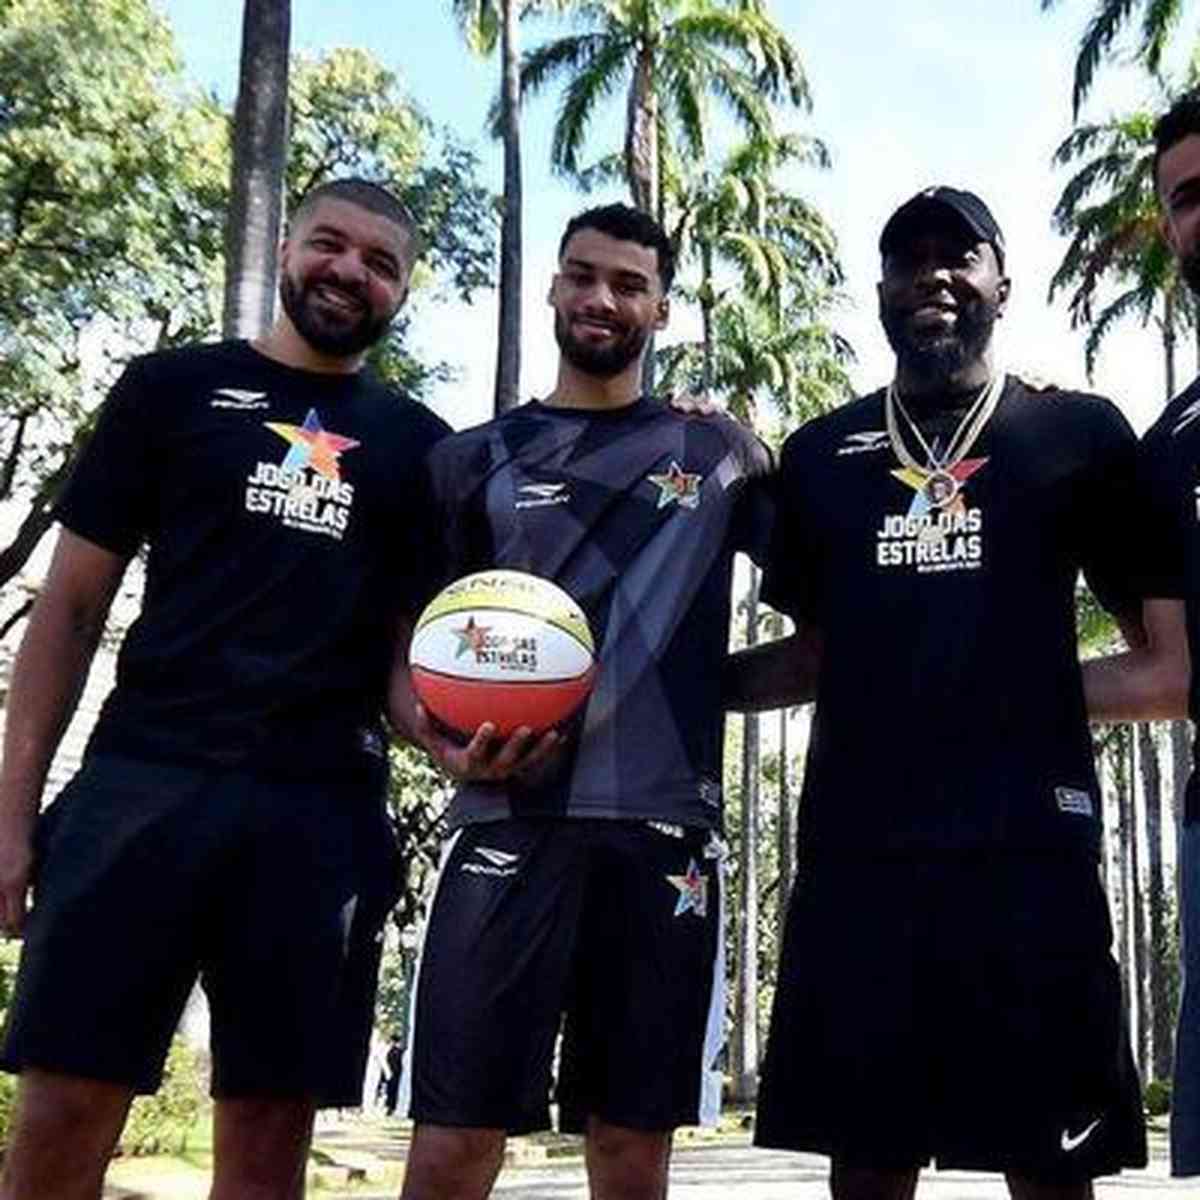 Cruzeiro estreia em Itatiaiuçu e vence mais uma no basquete - Superesportes